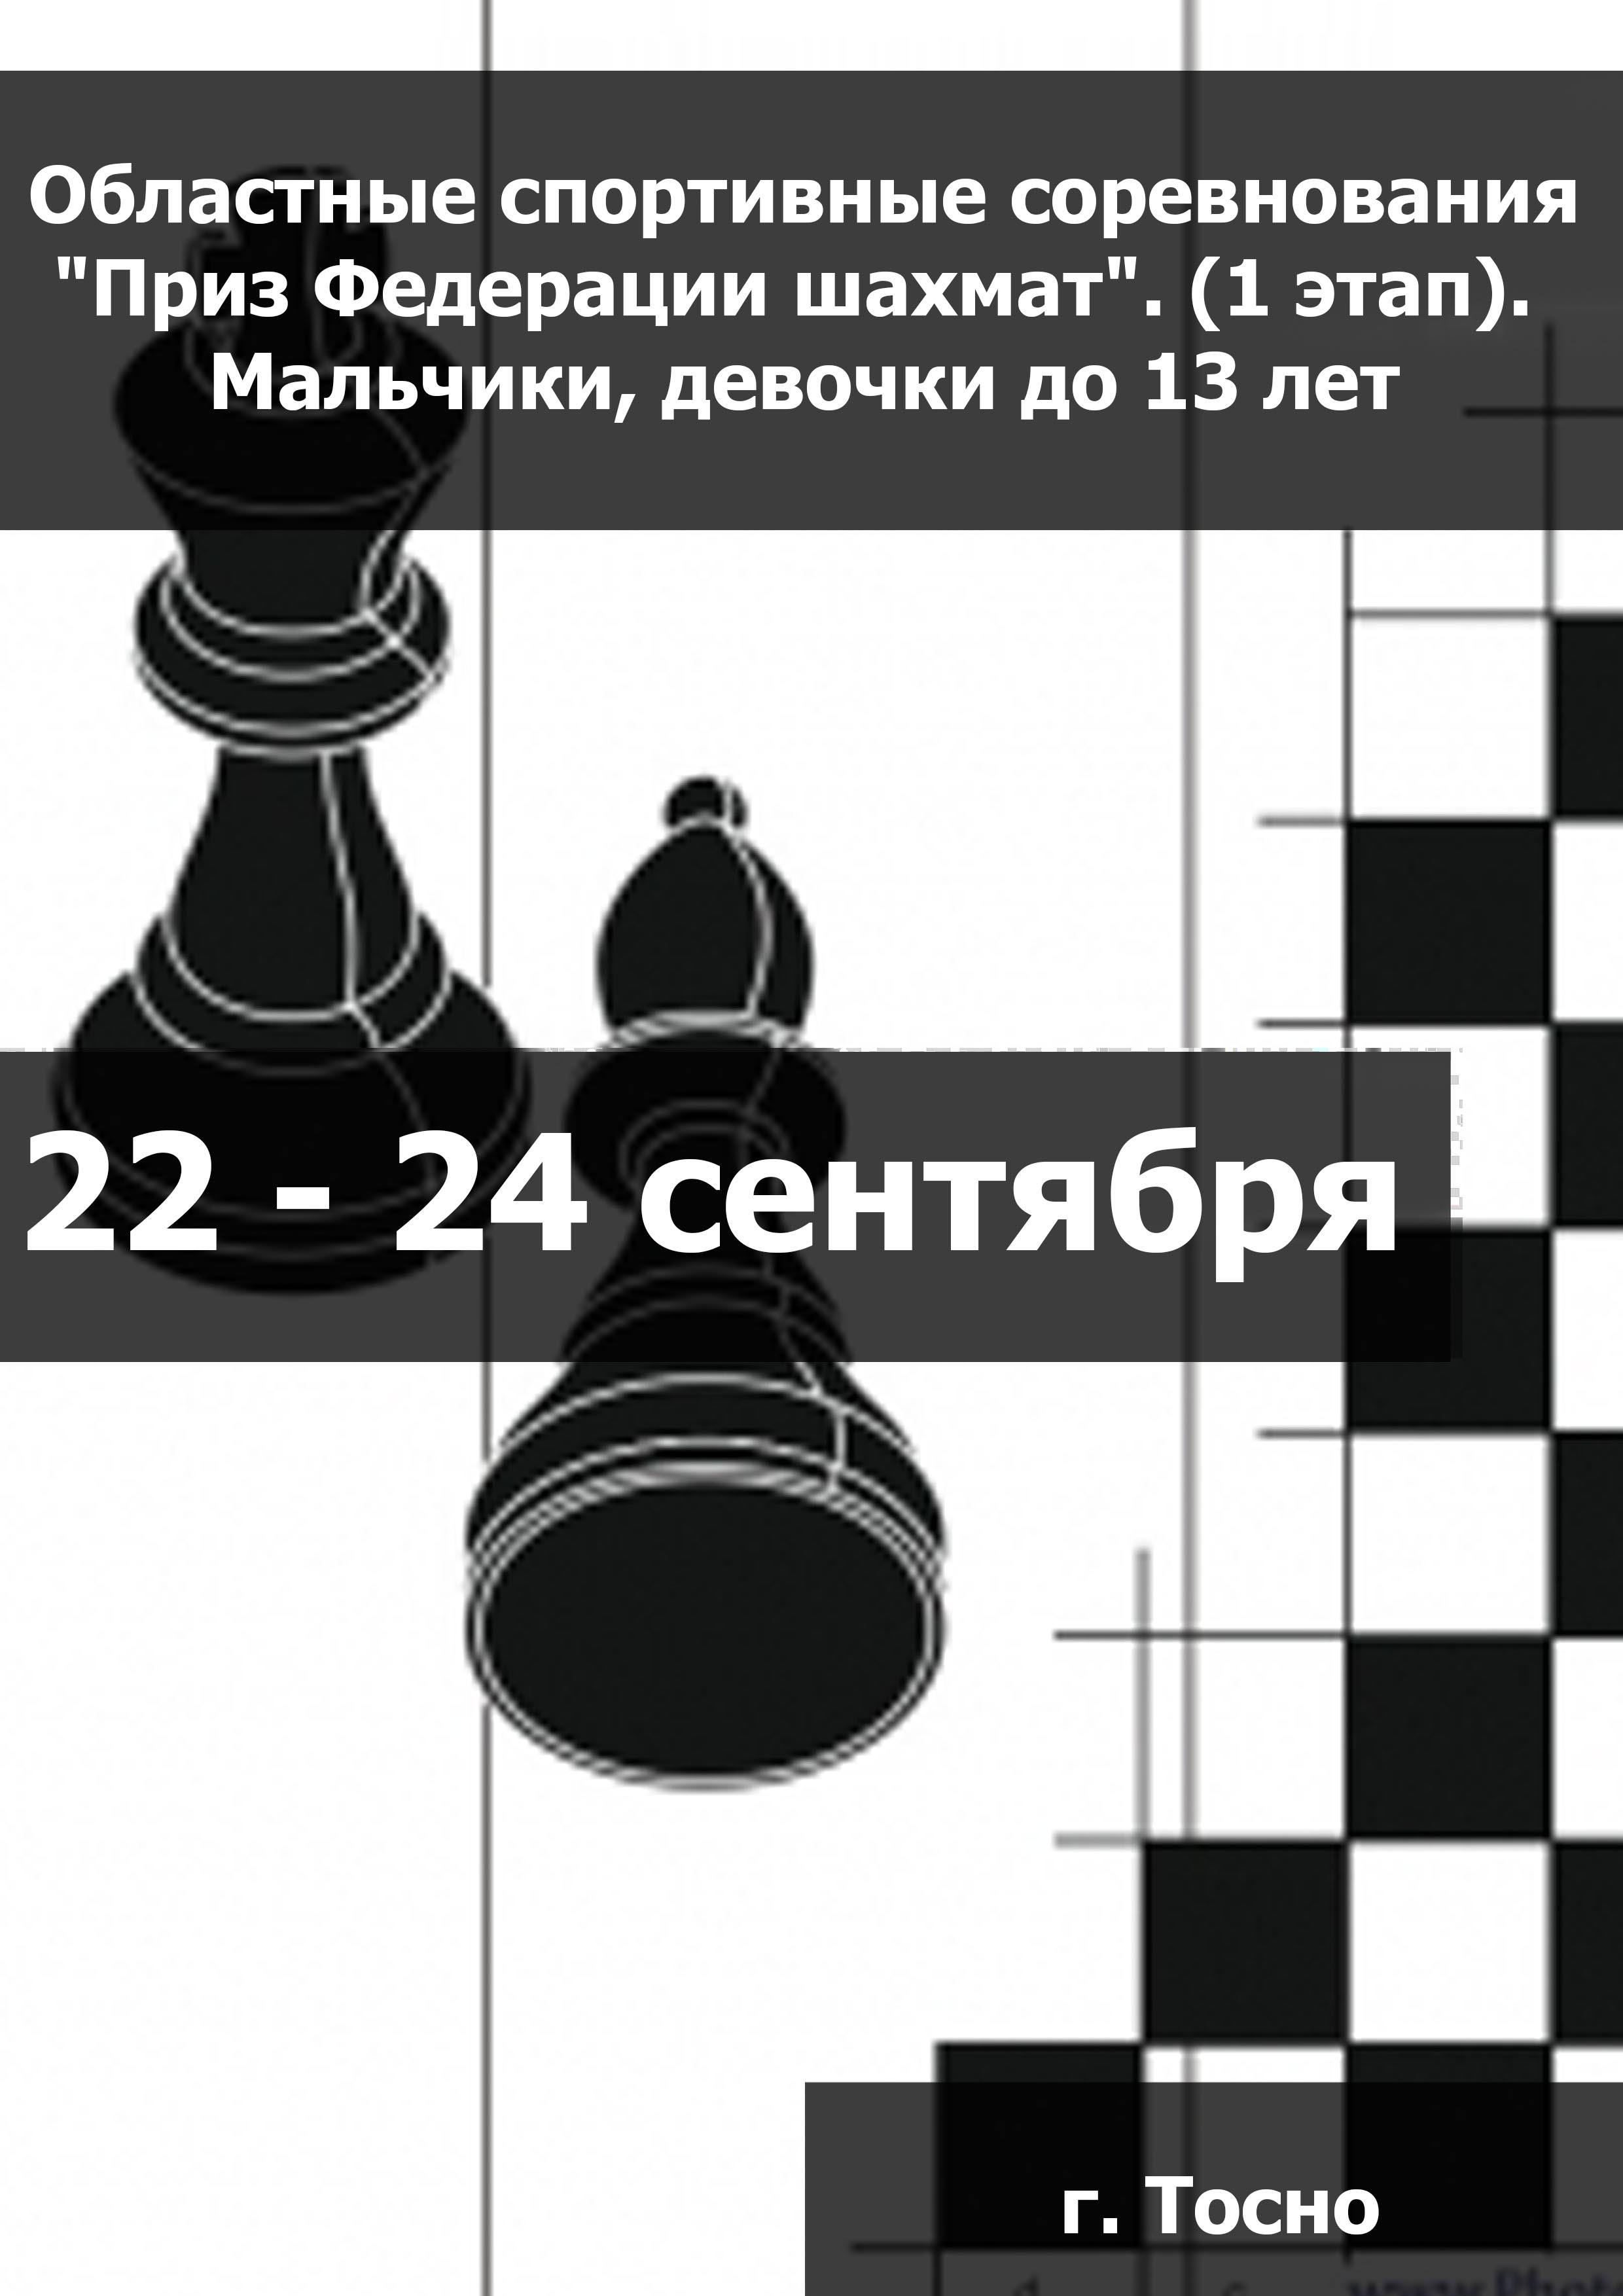 Областные спортивные соревнования "Приз Федерации шахмат". (1 этап).  Мальчики, девочки до 13 лет  22  september
 2023  rok
 